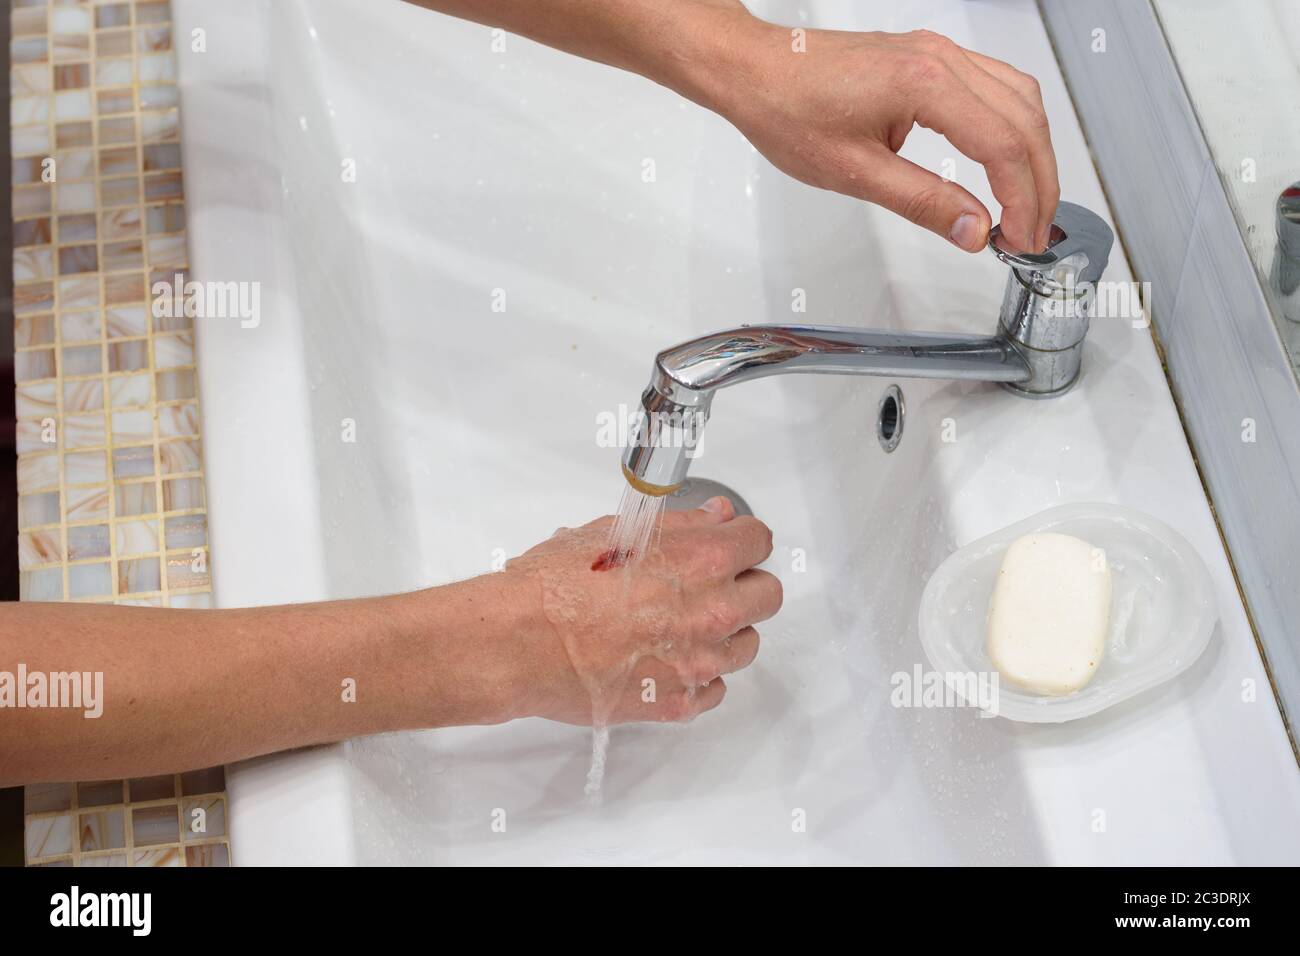 Un homme lave une blessure sur sa main sous un ruisseau d'eau dans le lavabo Banque D'Images